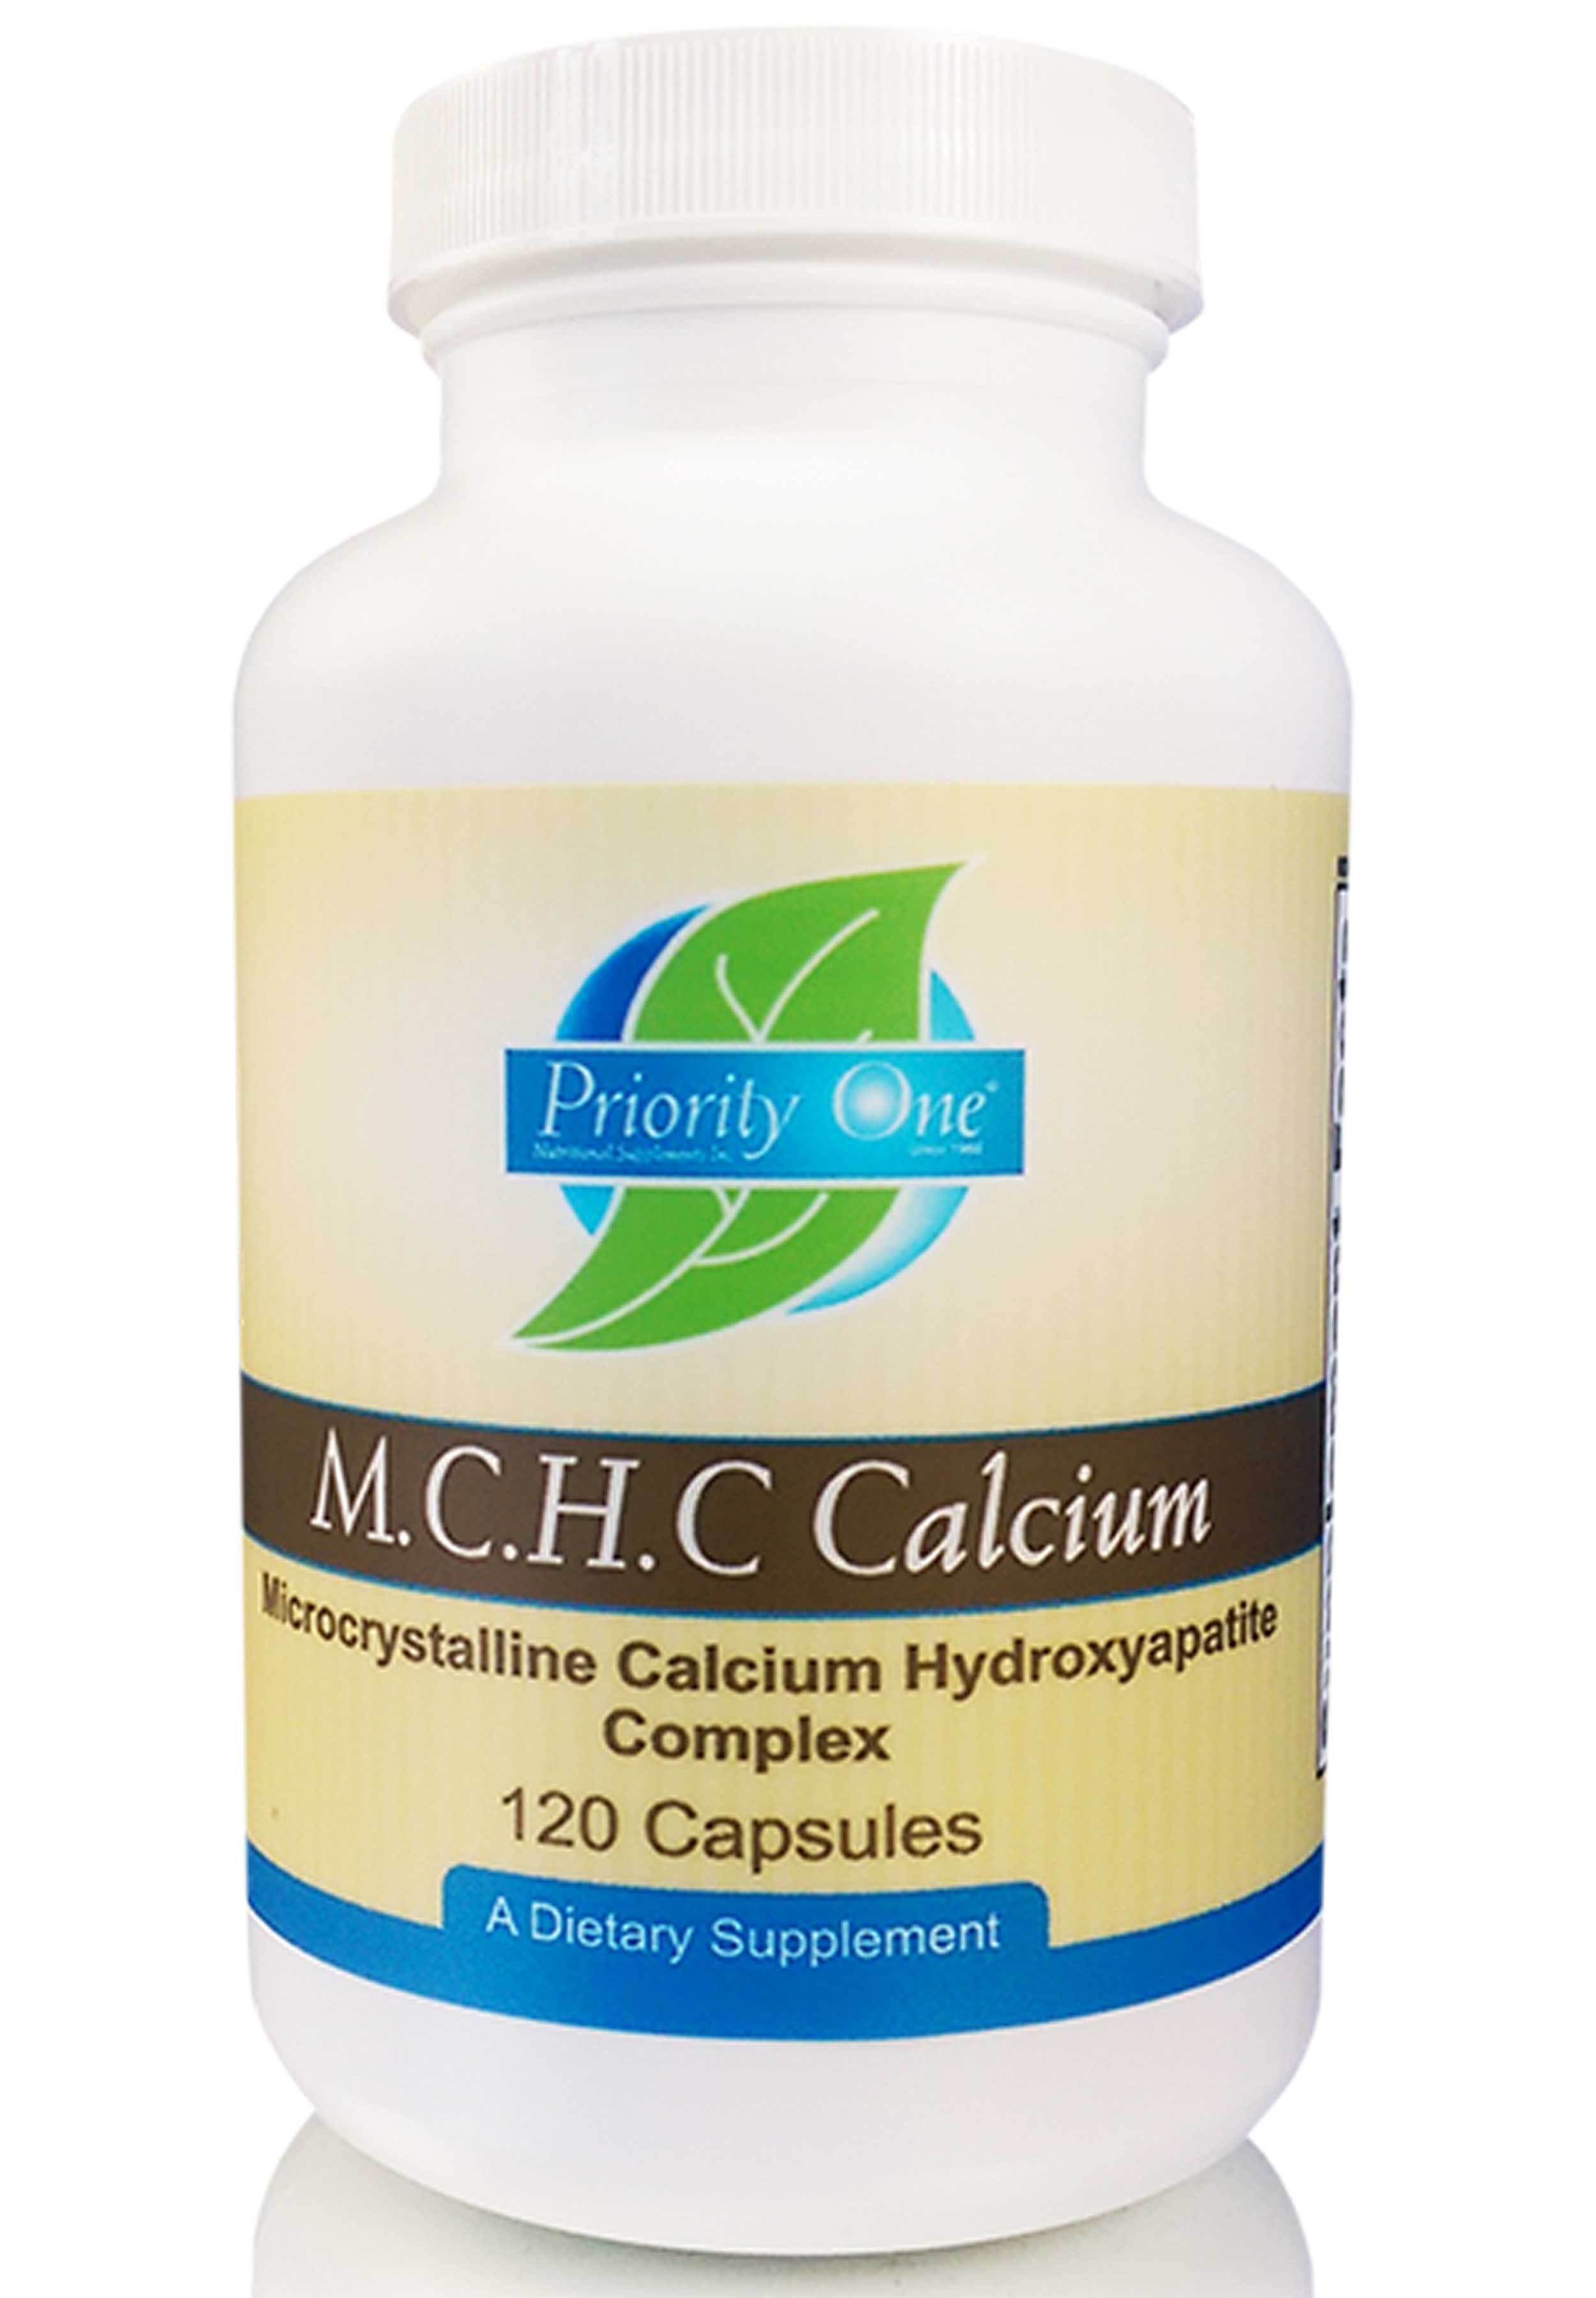 Priority One M.C.H.C. Calcium 